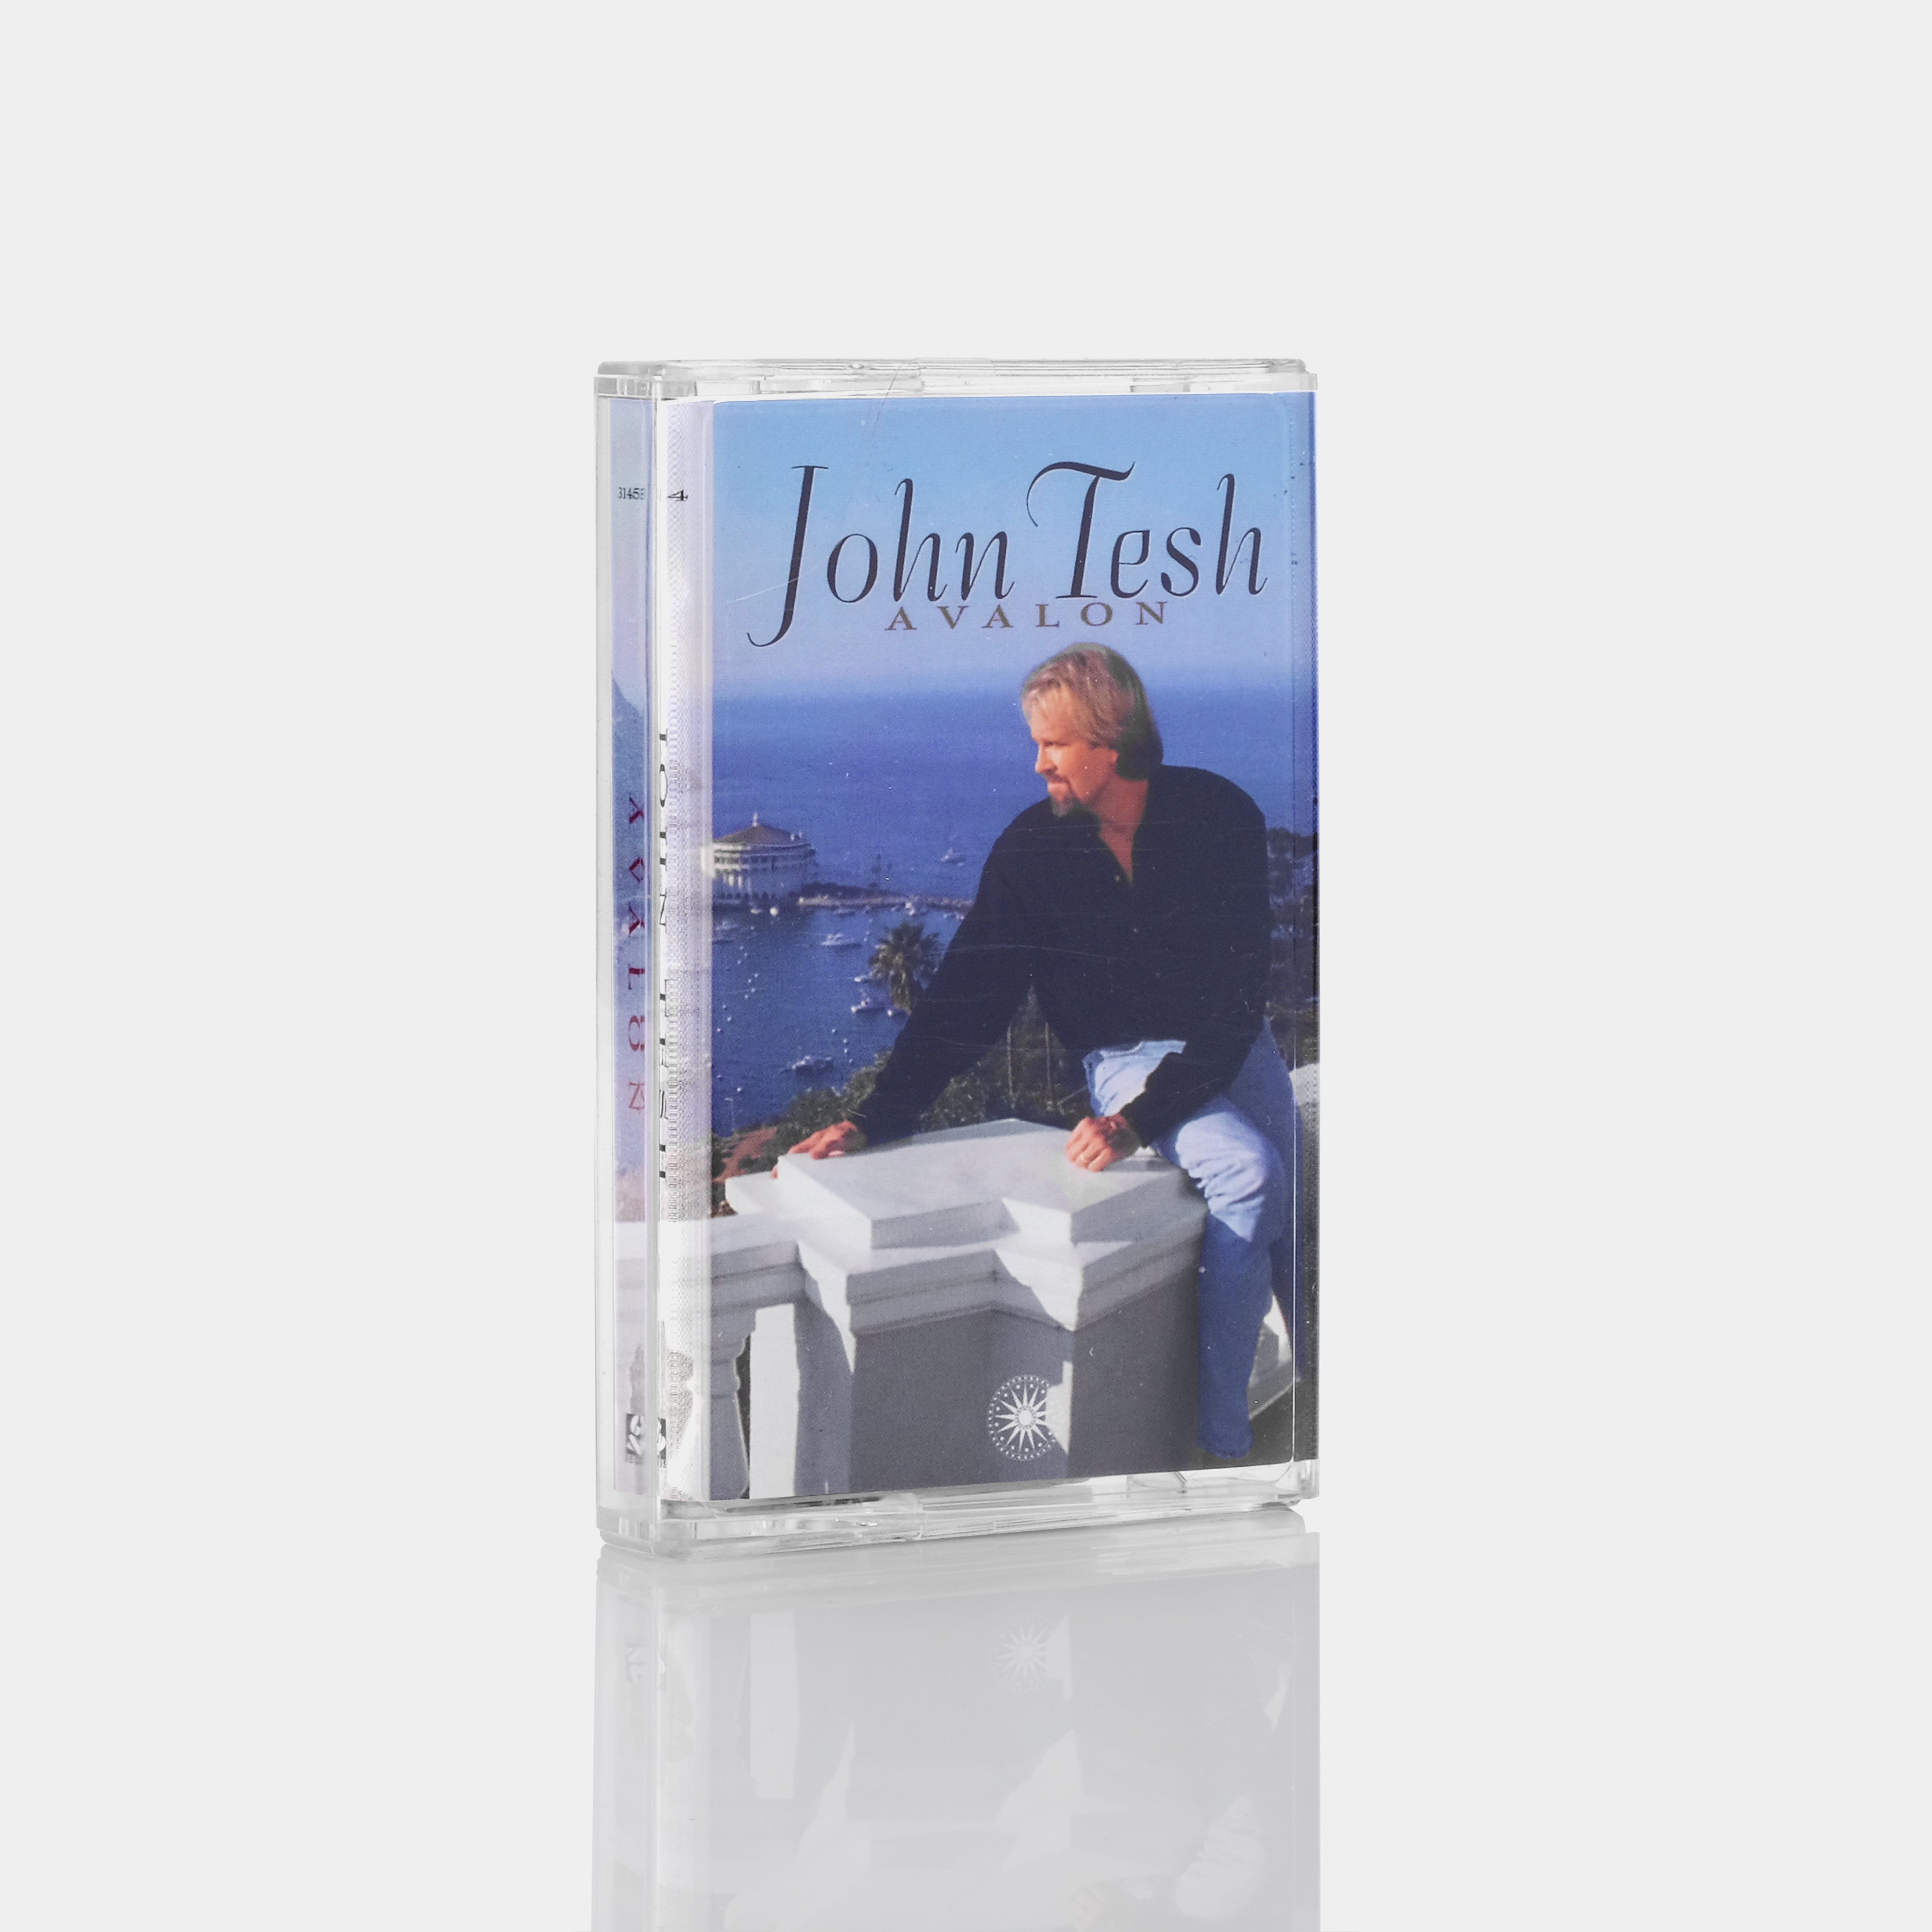 John Tesh - Avalon Cassette Tape